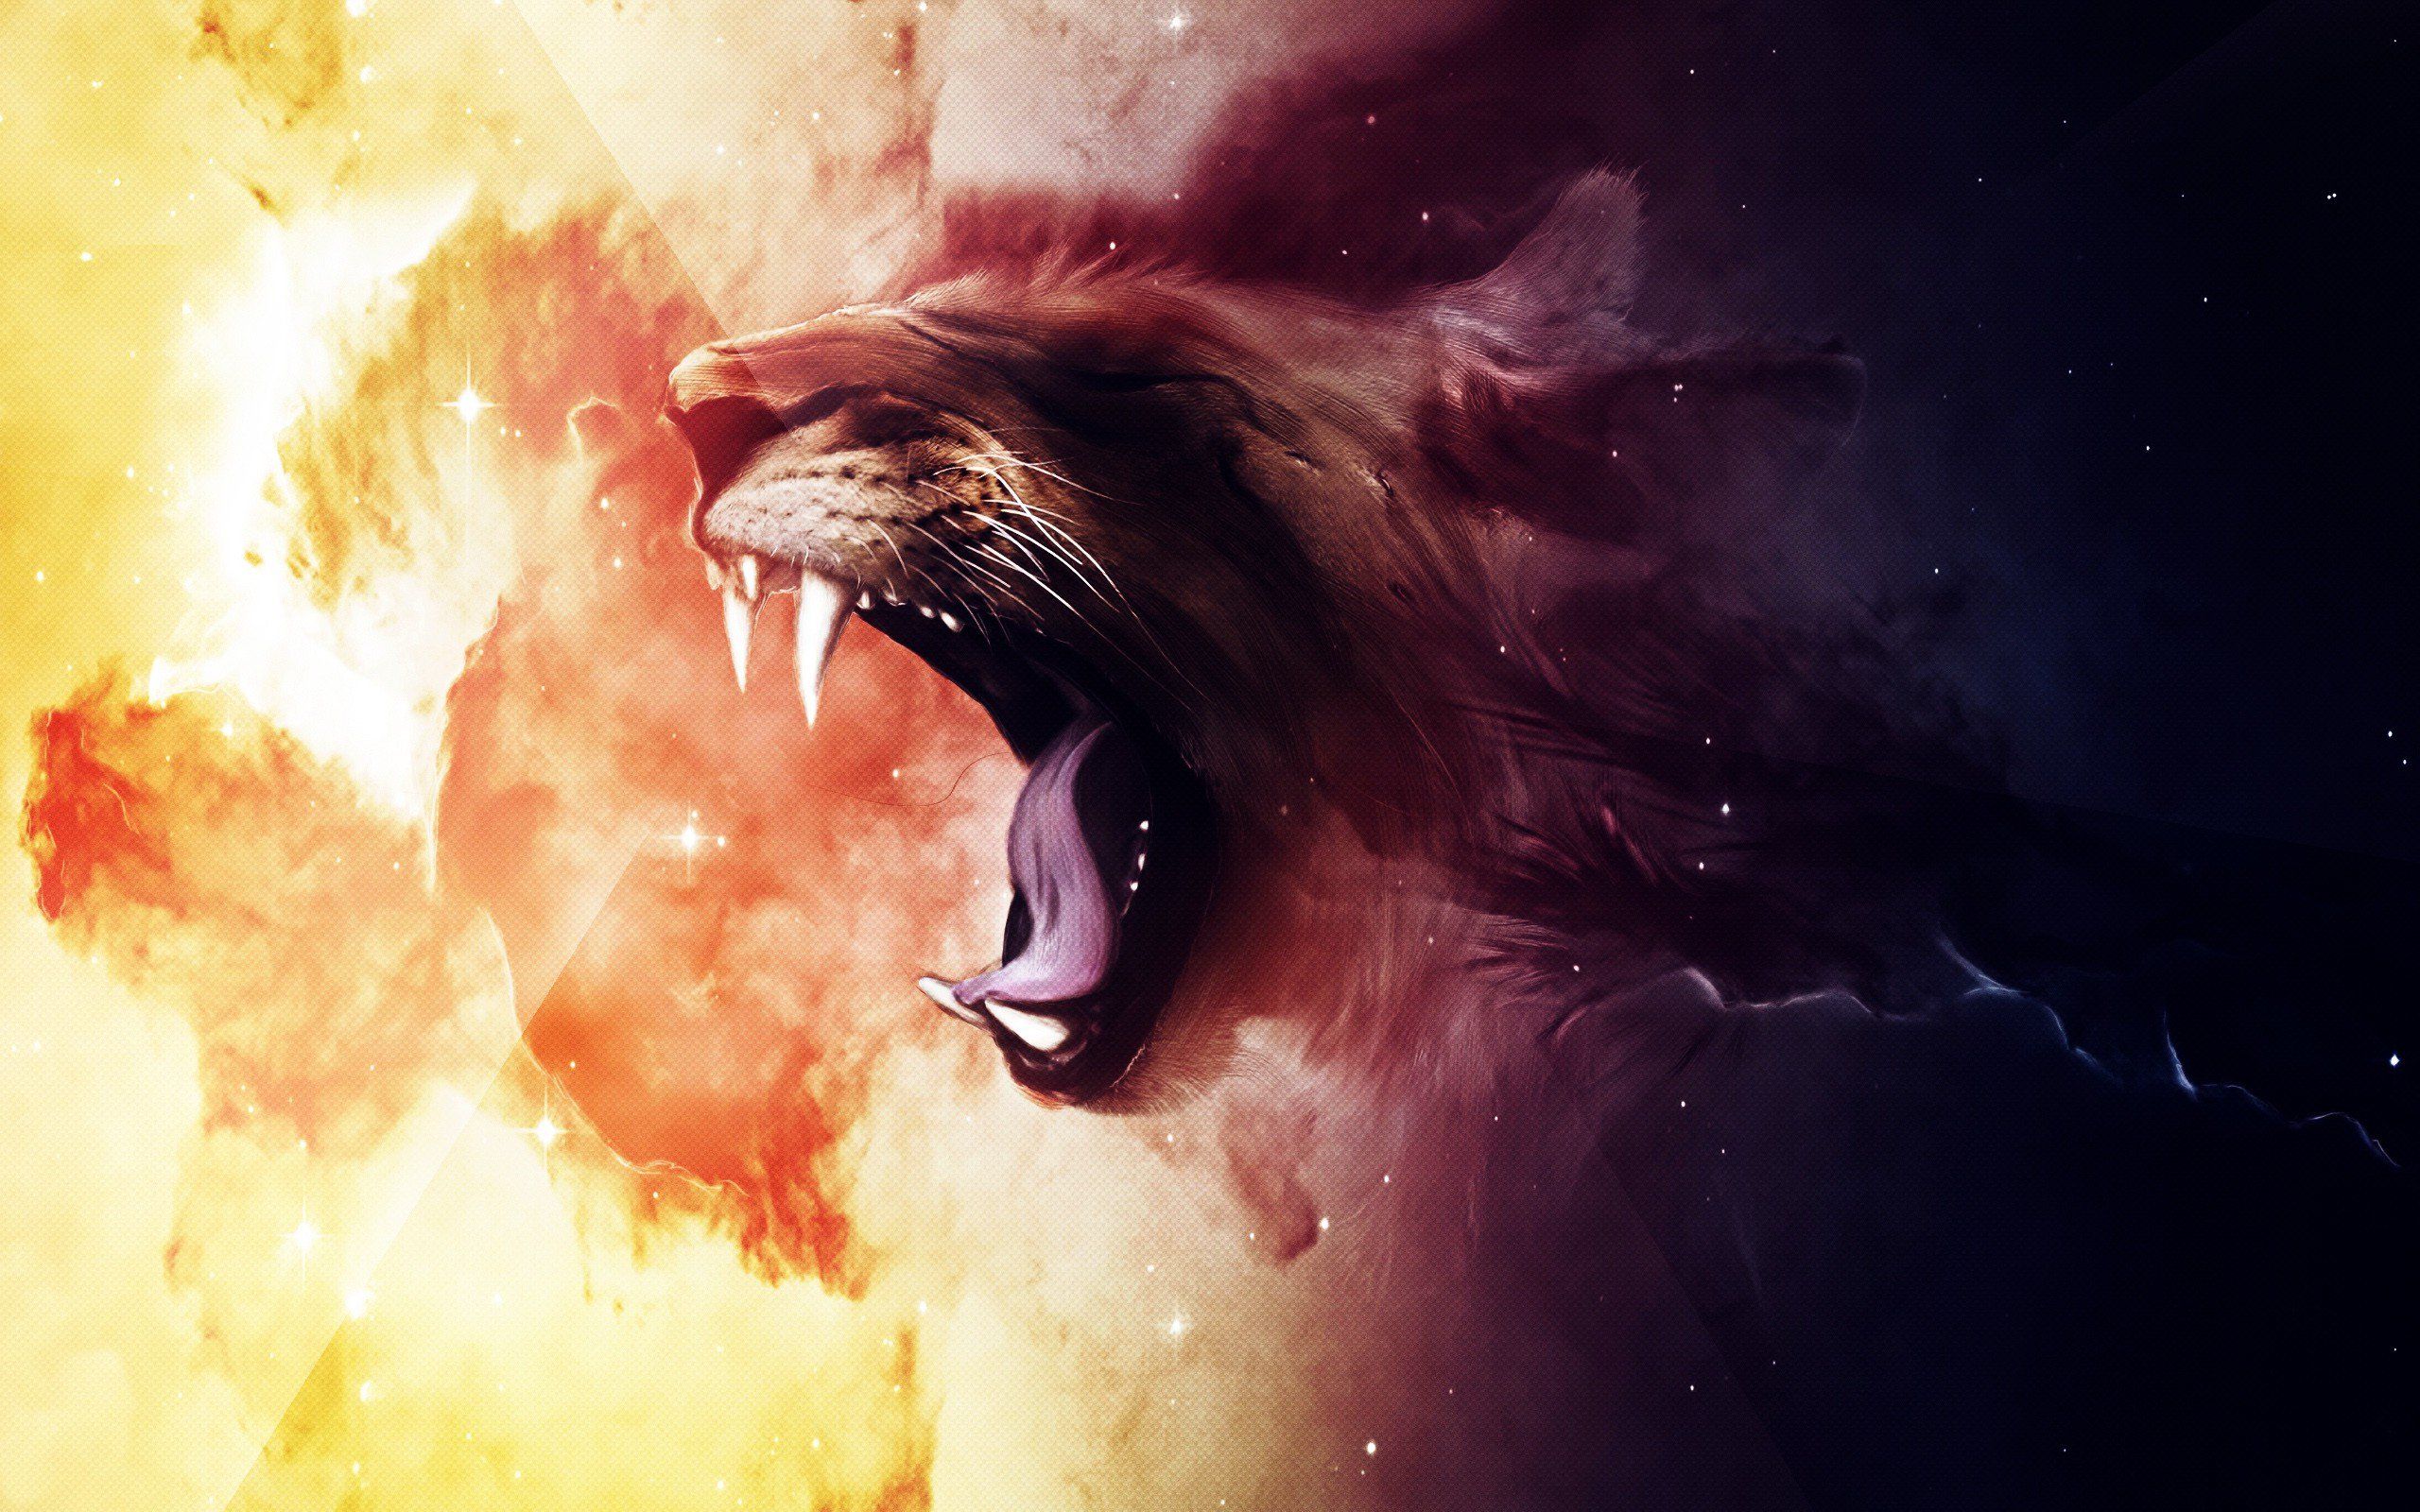 Roaring Lion, HD Creative, fondos de pantalla 4k, imágenes, fondos